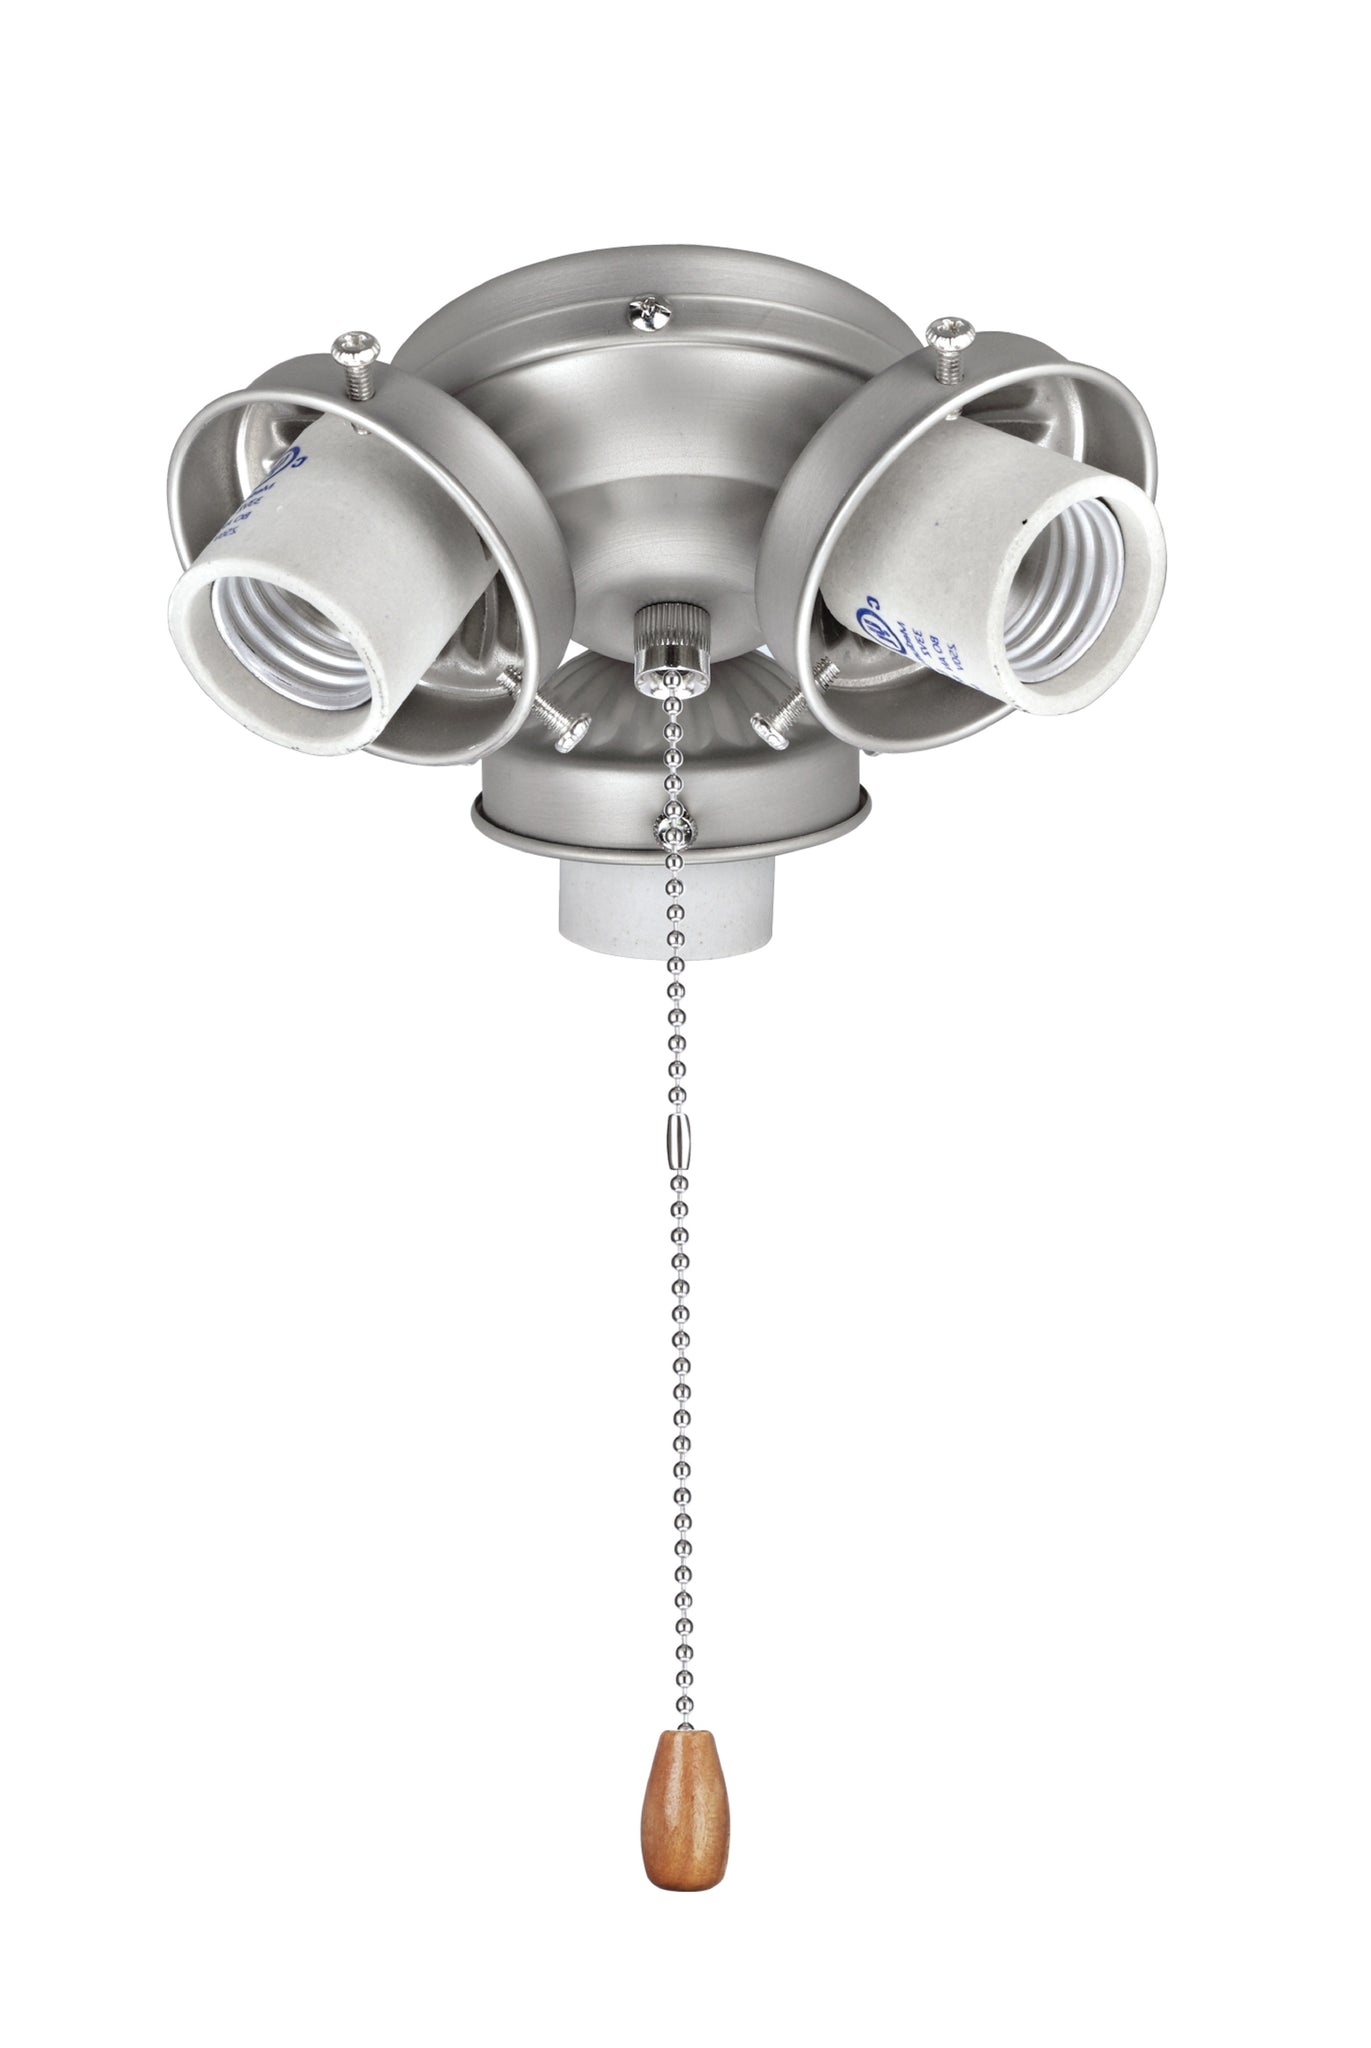 22002 11 Three Light Ceiling Fan